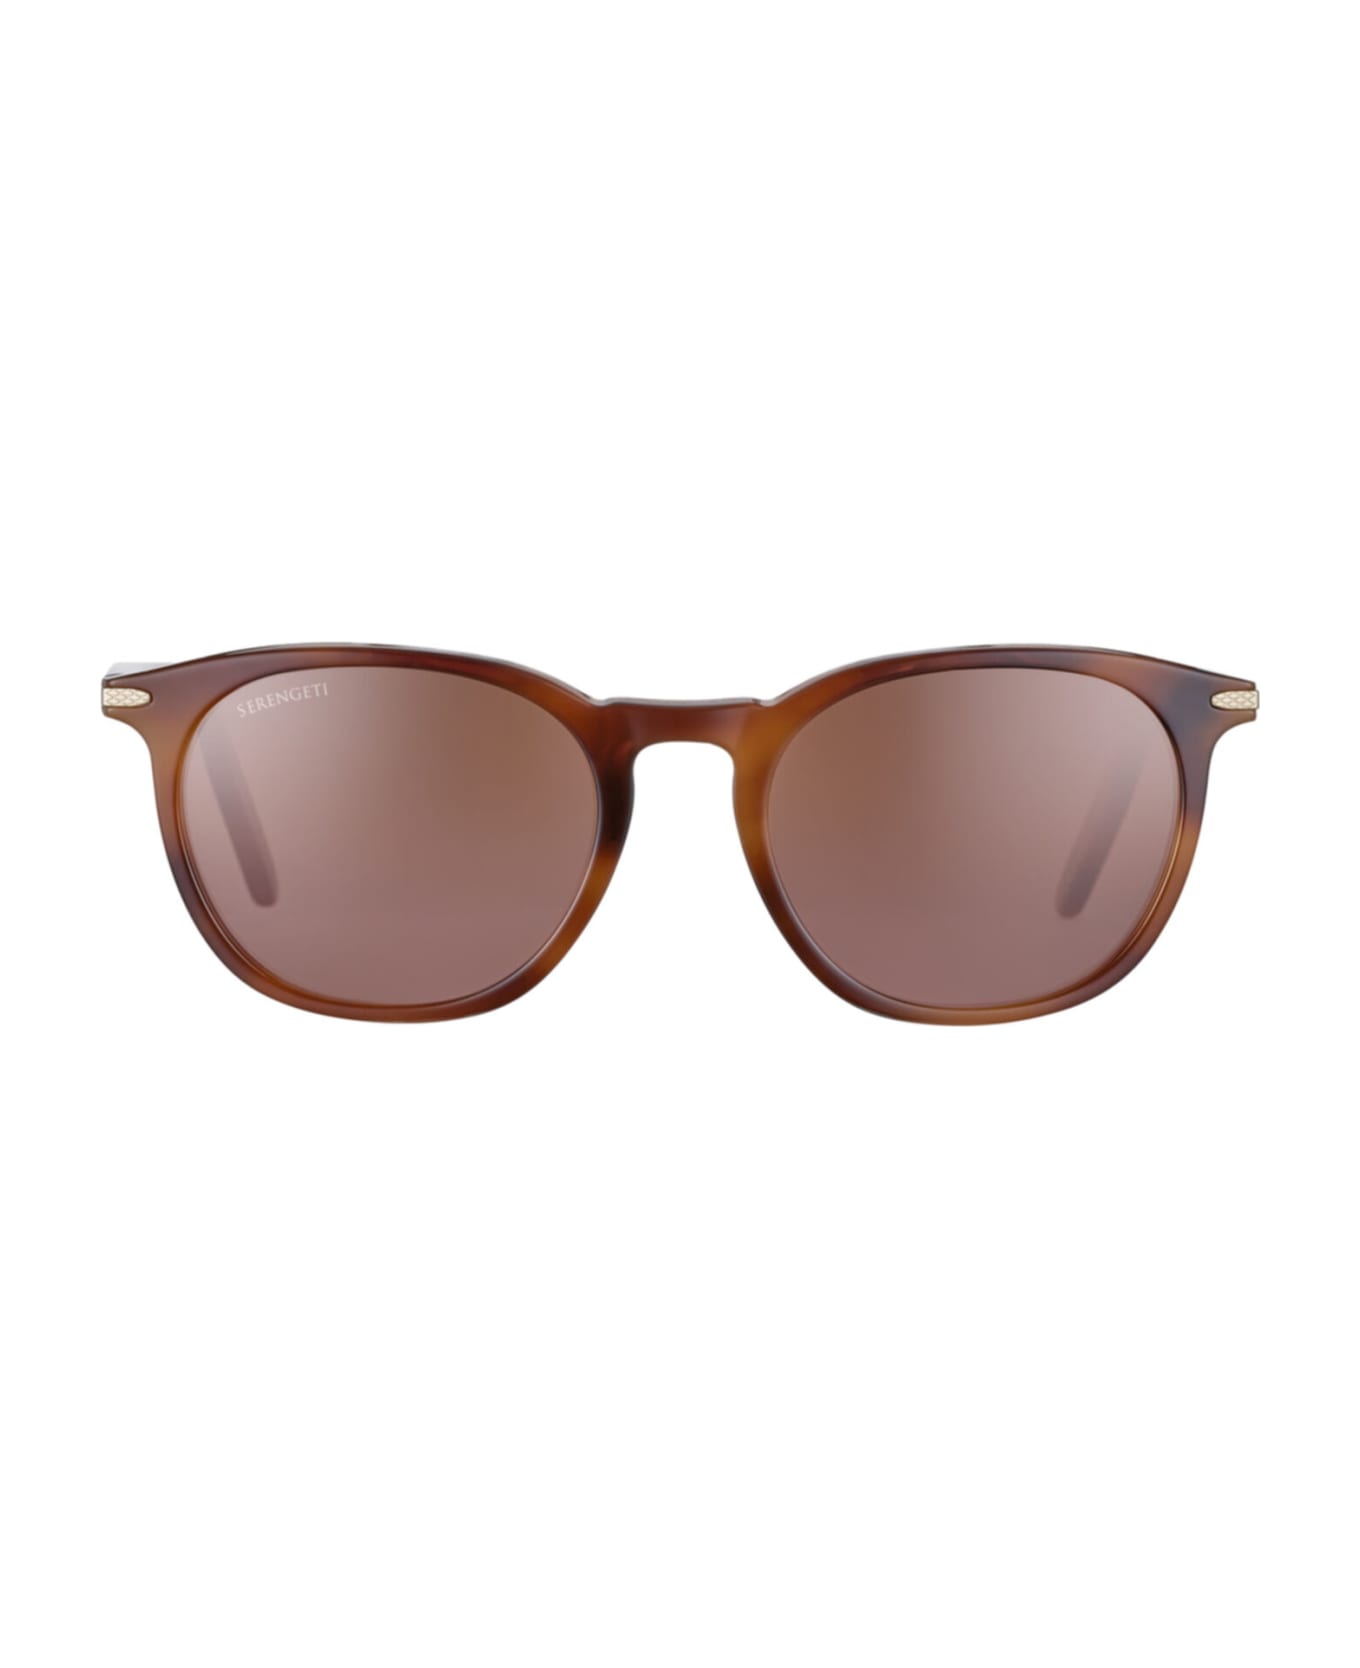 Serengeti Eyewear Arlie 8938 Sunglasses - Shiny Red Moss Tortoise